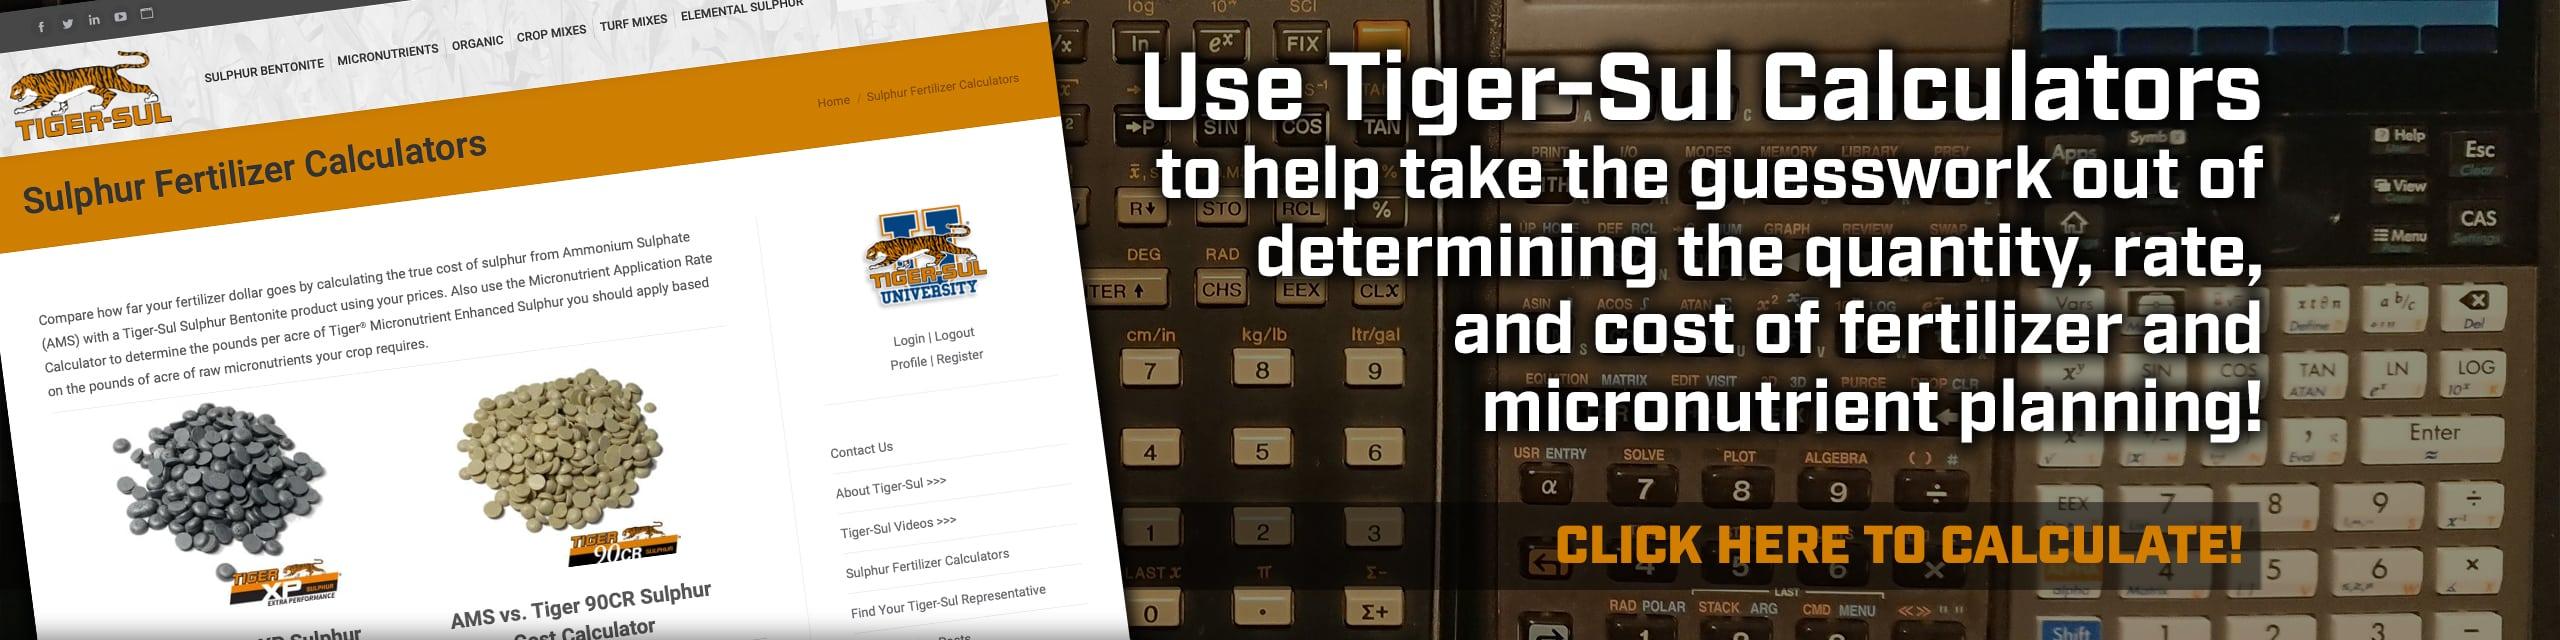 Use Tiger-Sul Calculators